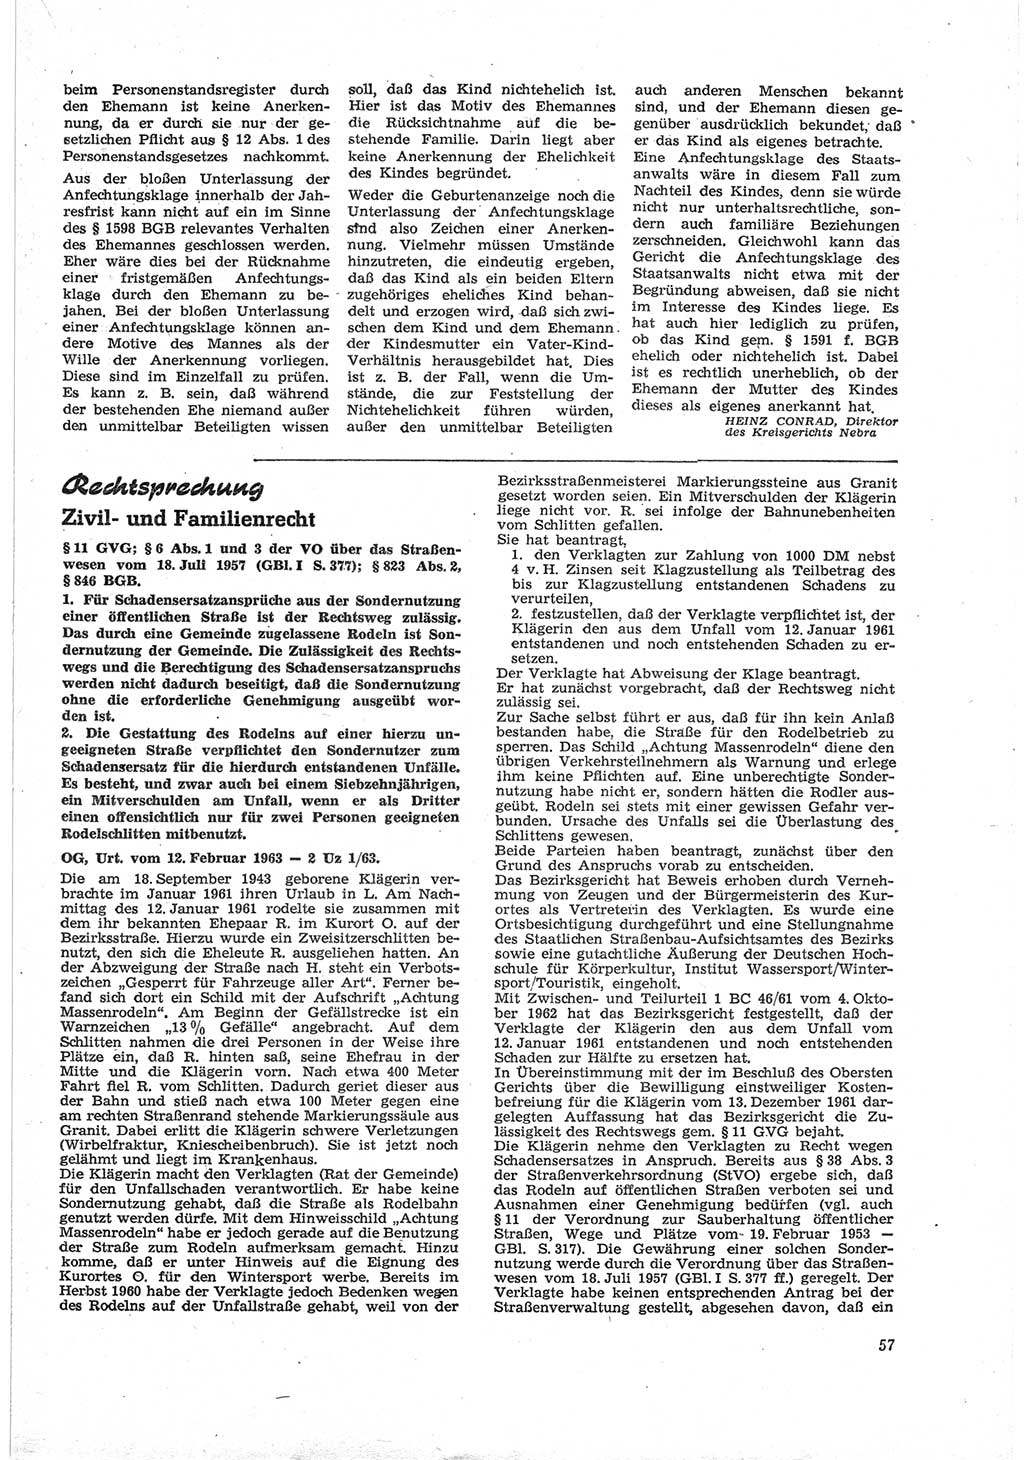 Neue Justiz (NJ), Zeitschrift für Recht und Rechtswissenschaft [Deutsche Demokratische Republik (DDR)], 18. Jahrgang 1964, Seite 57 (NJ DDR 1964, S. 57)